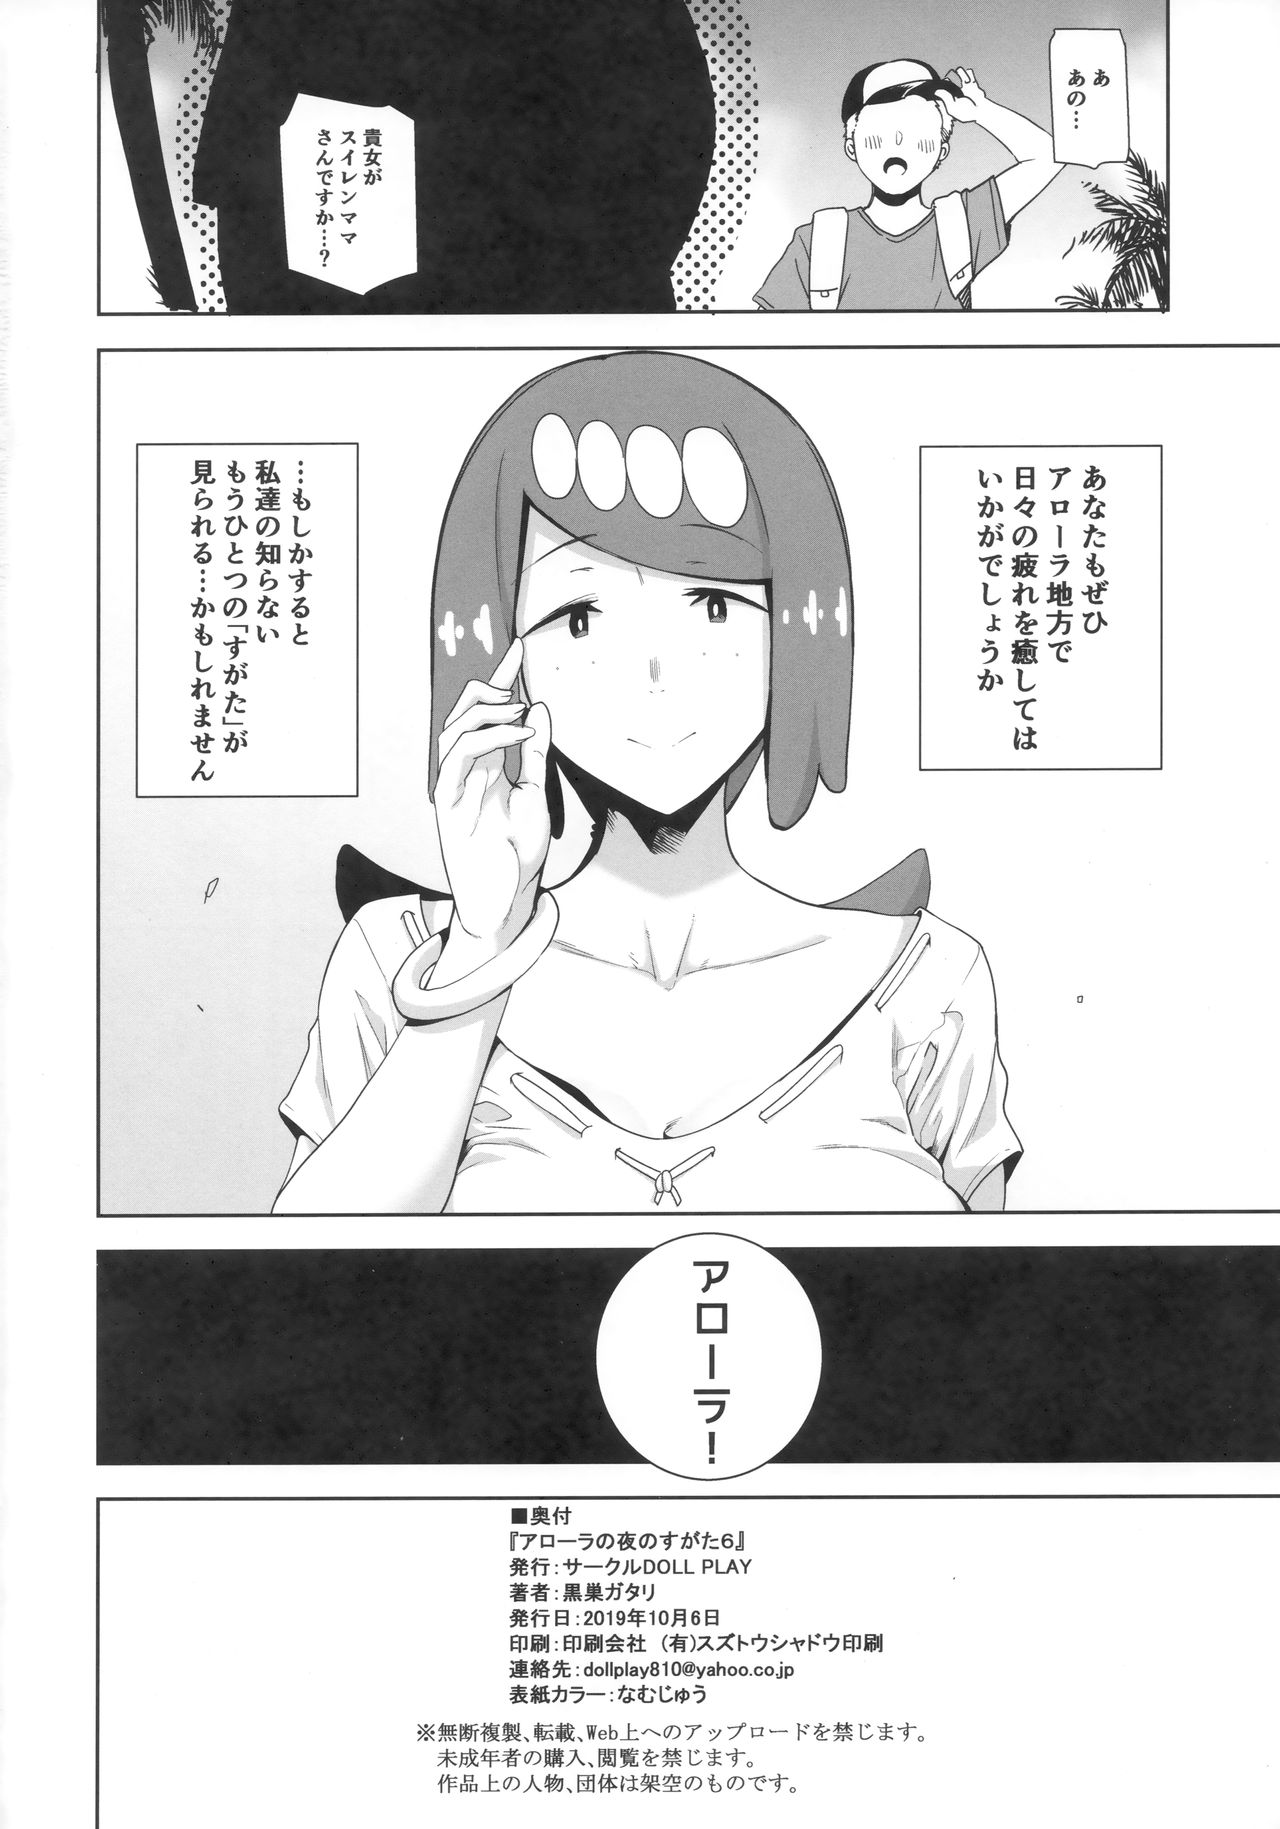 (COMIC1☆16) [DOLL PLAY (Kurosu Gatari)] Alola no Yoru no Sugata 6 (Pokémon Sun and Moon) page 29 full